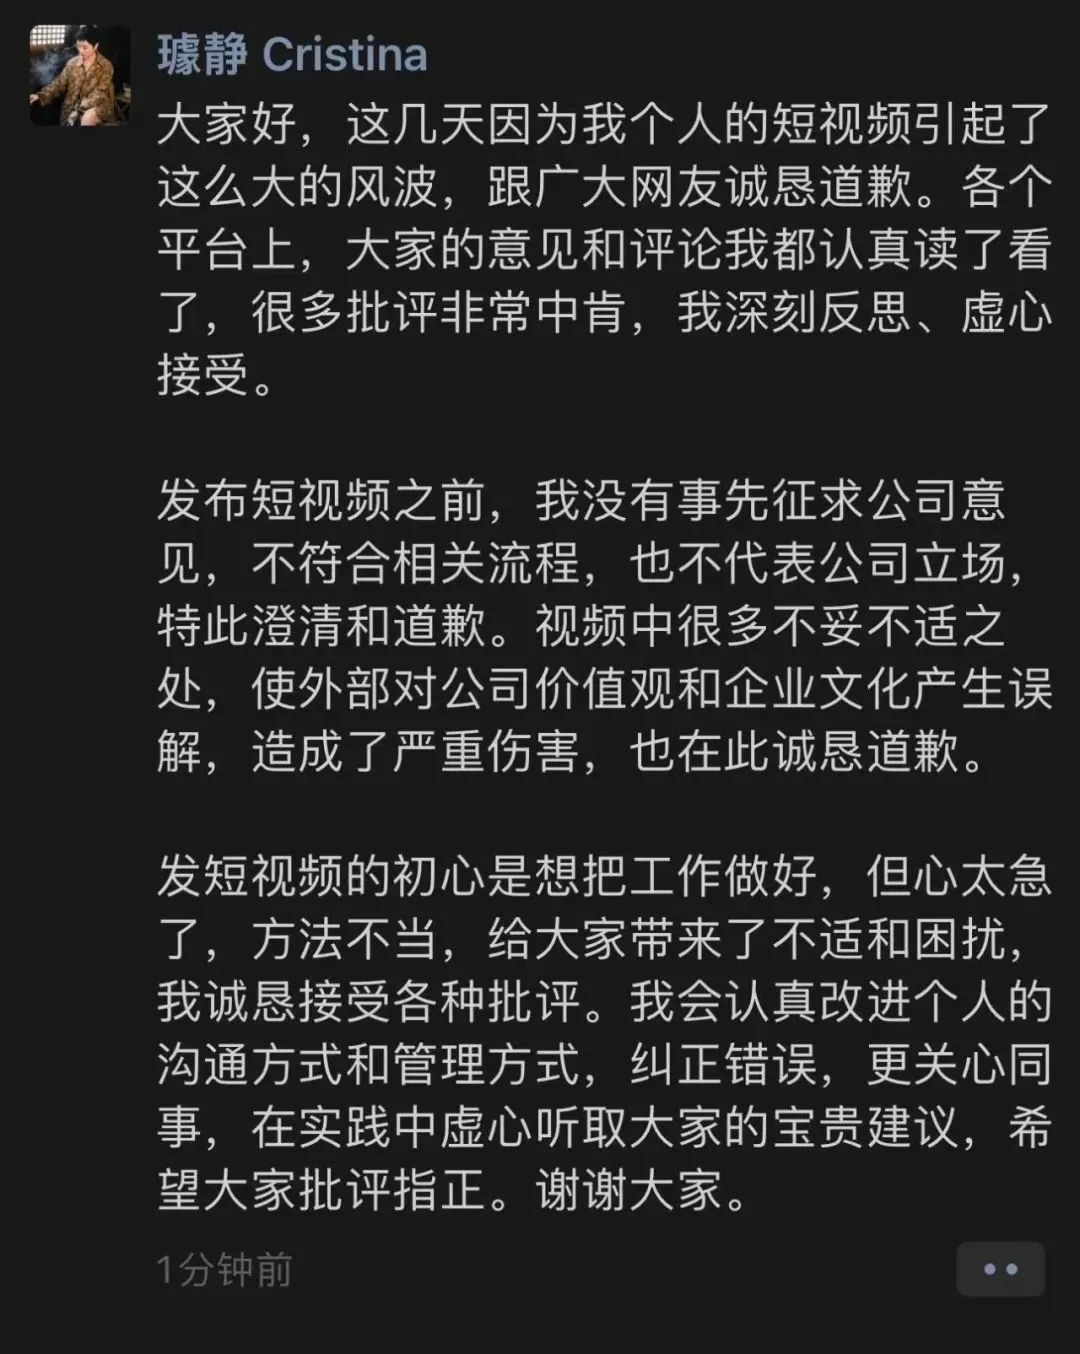 百度副总裁清空抖音账号，“秒批员工离职申请”等言论惹争议_北京时间